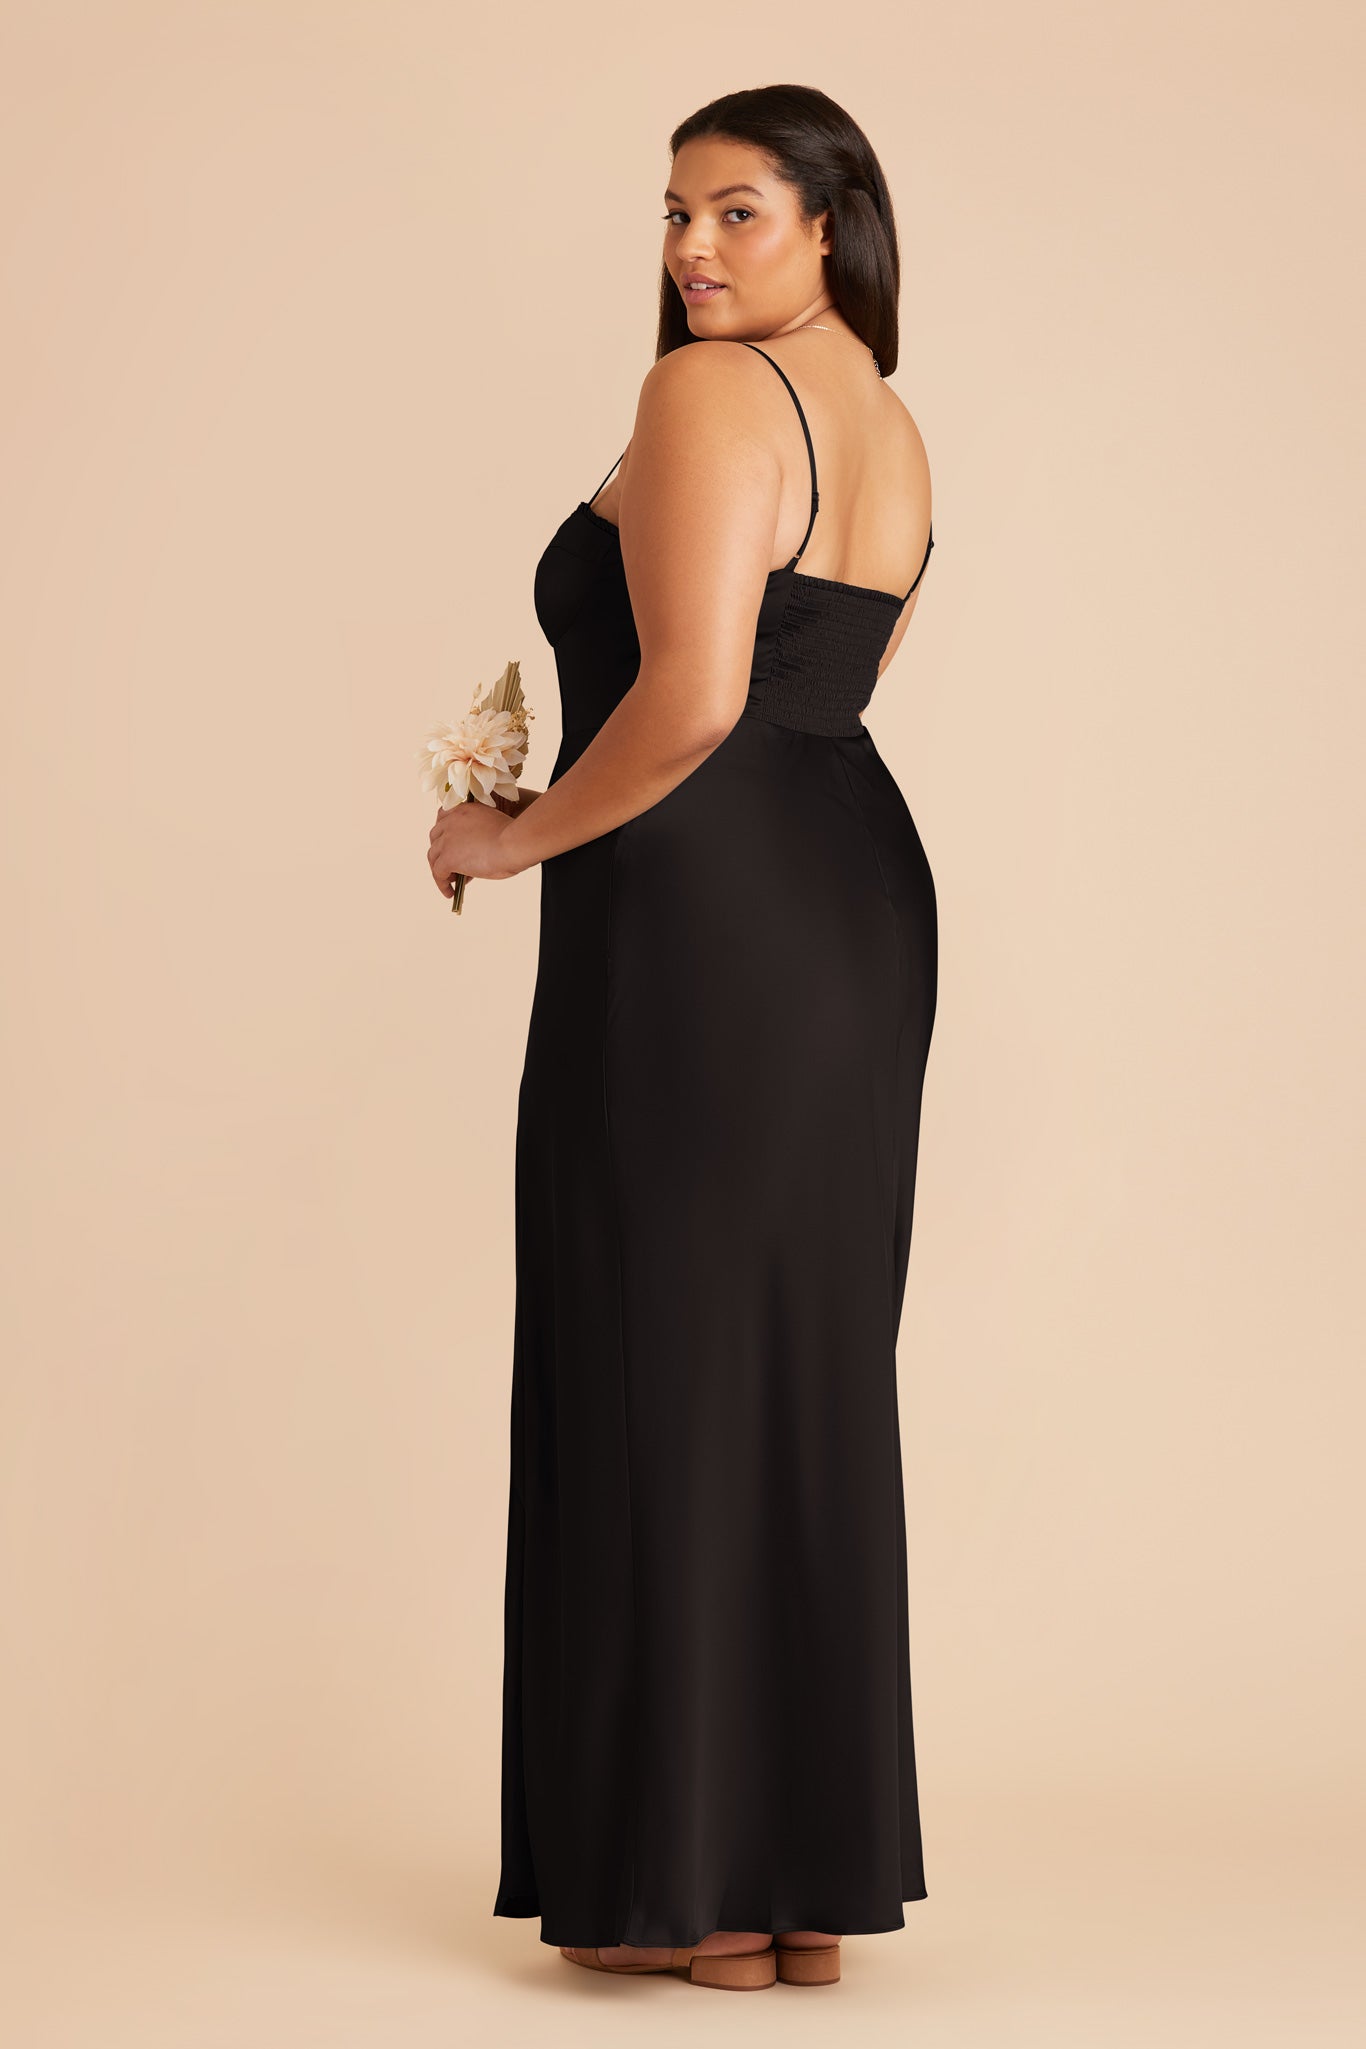 Black Jessica Matte Satin Dress by Birdy Grey